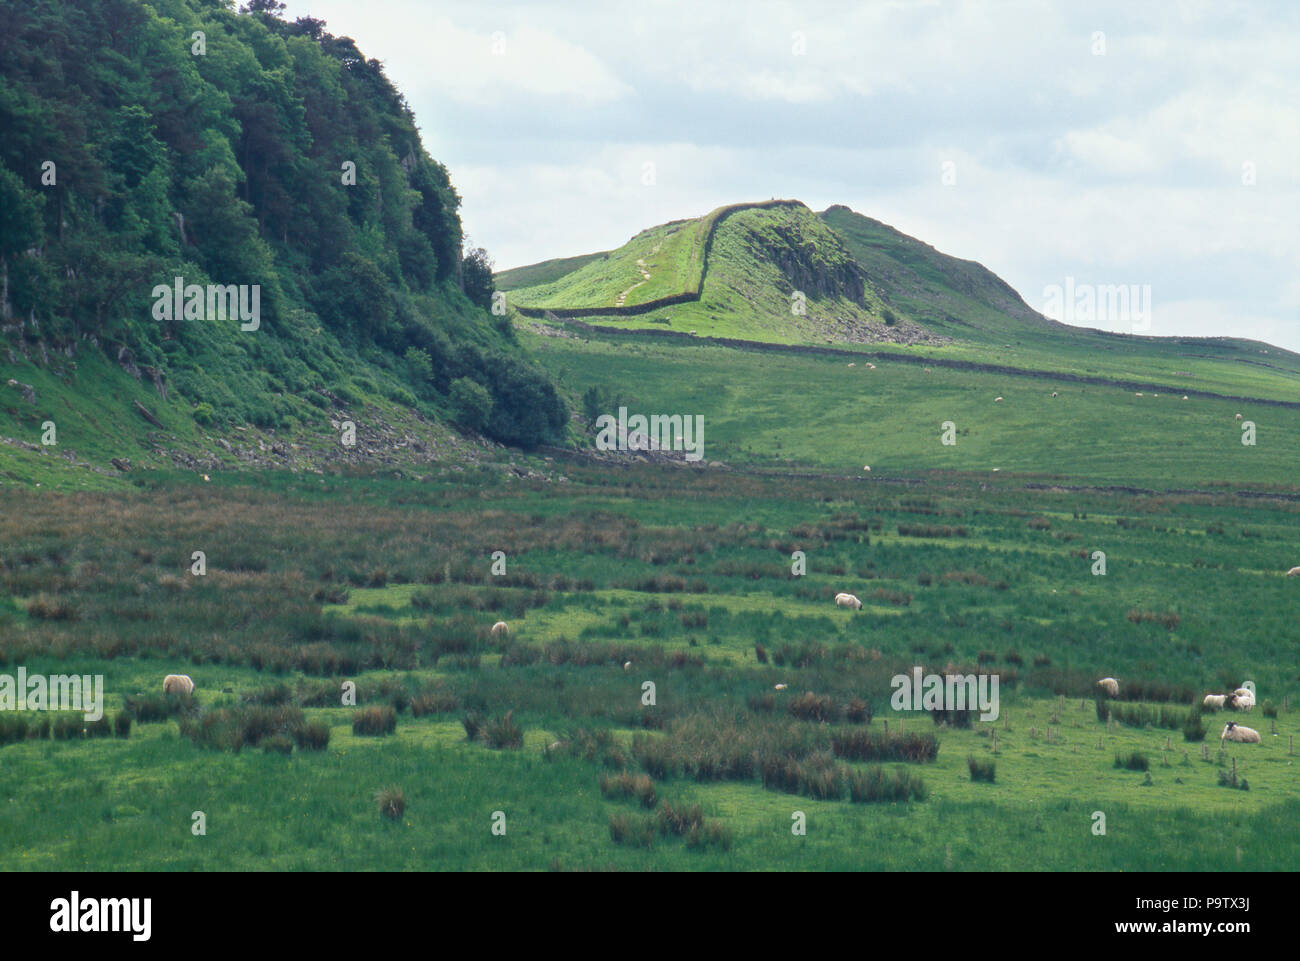 Hadrian's Wall, Grenze des Römischen Reiches in Northumbria, England, 2. Foto Stockfoto